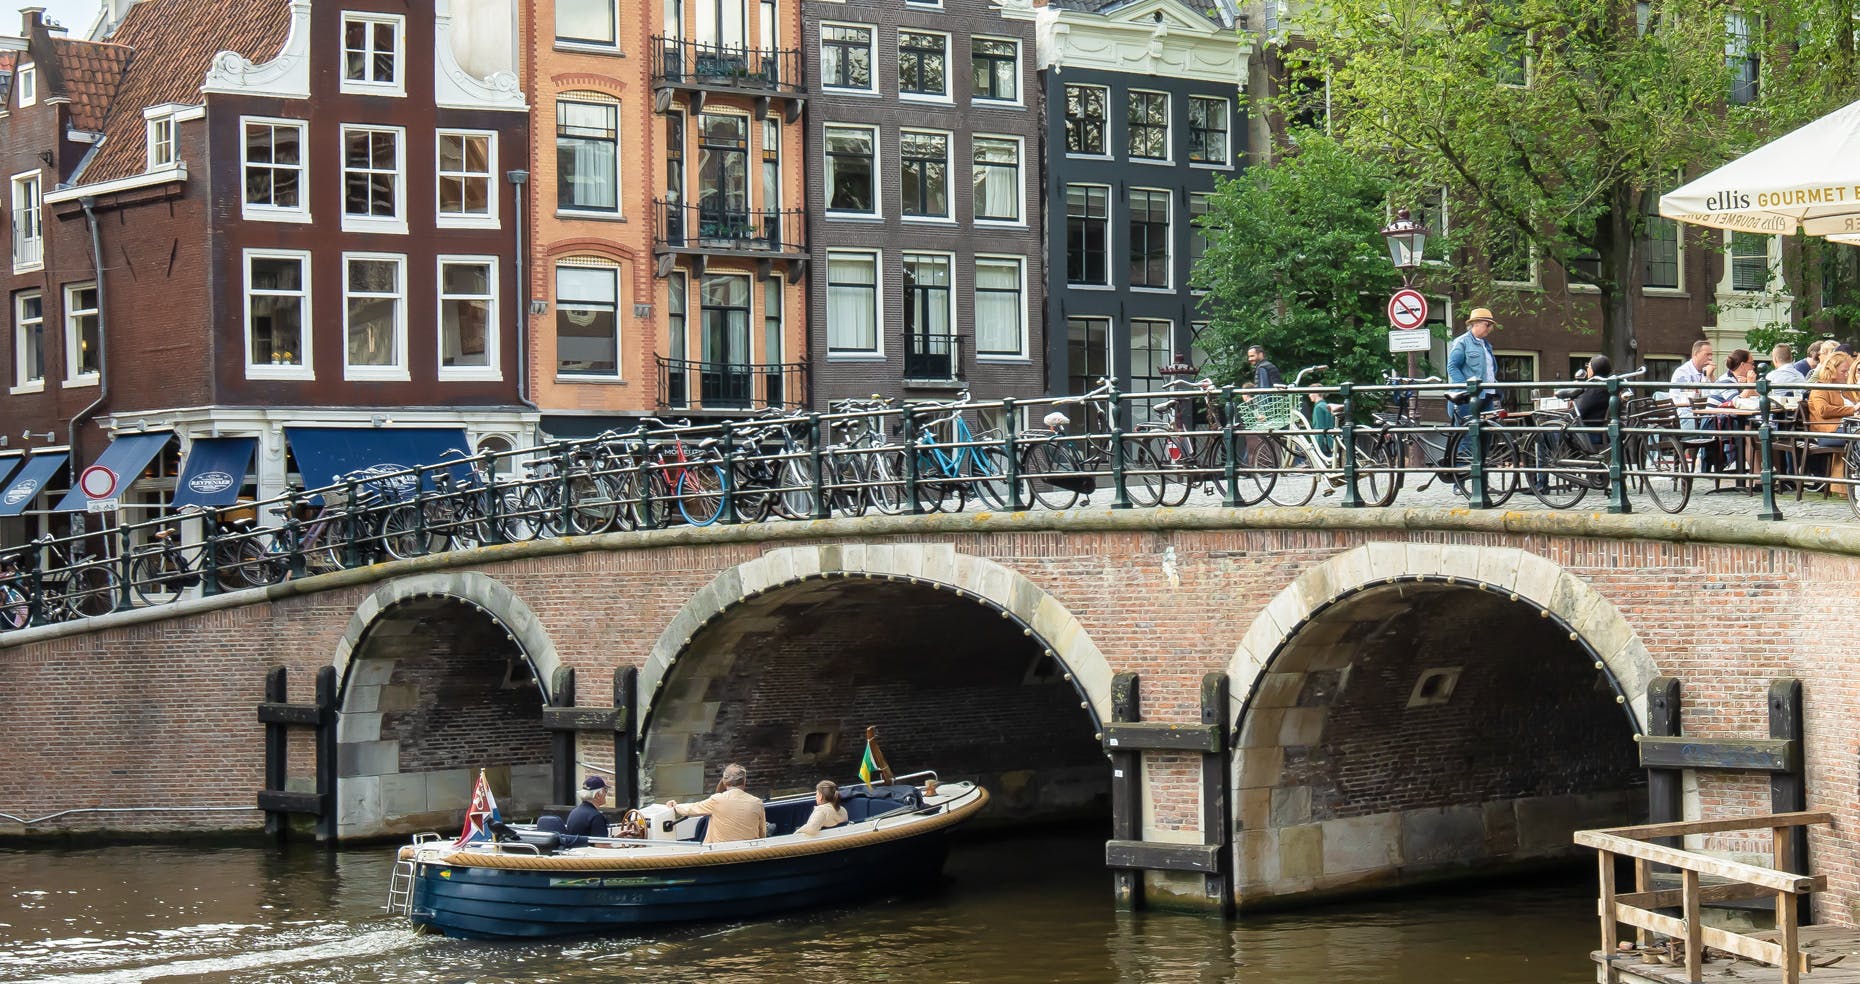 Kulturelle Stadtführung in Amsterdam auf Deutsch